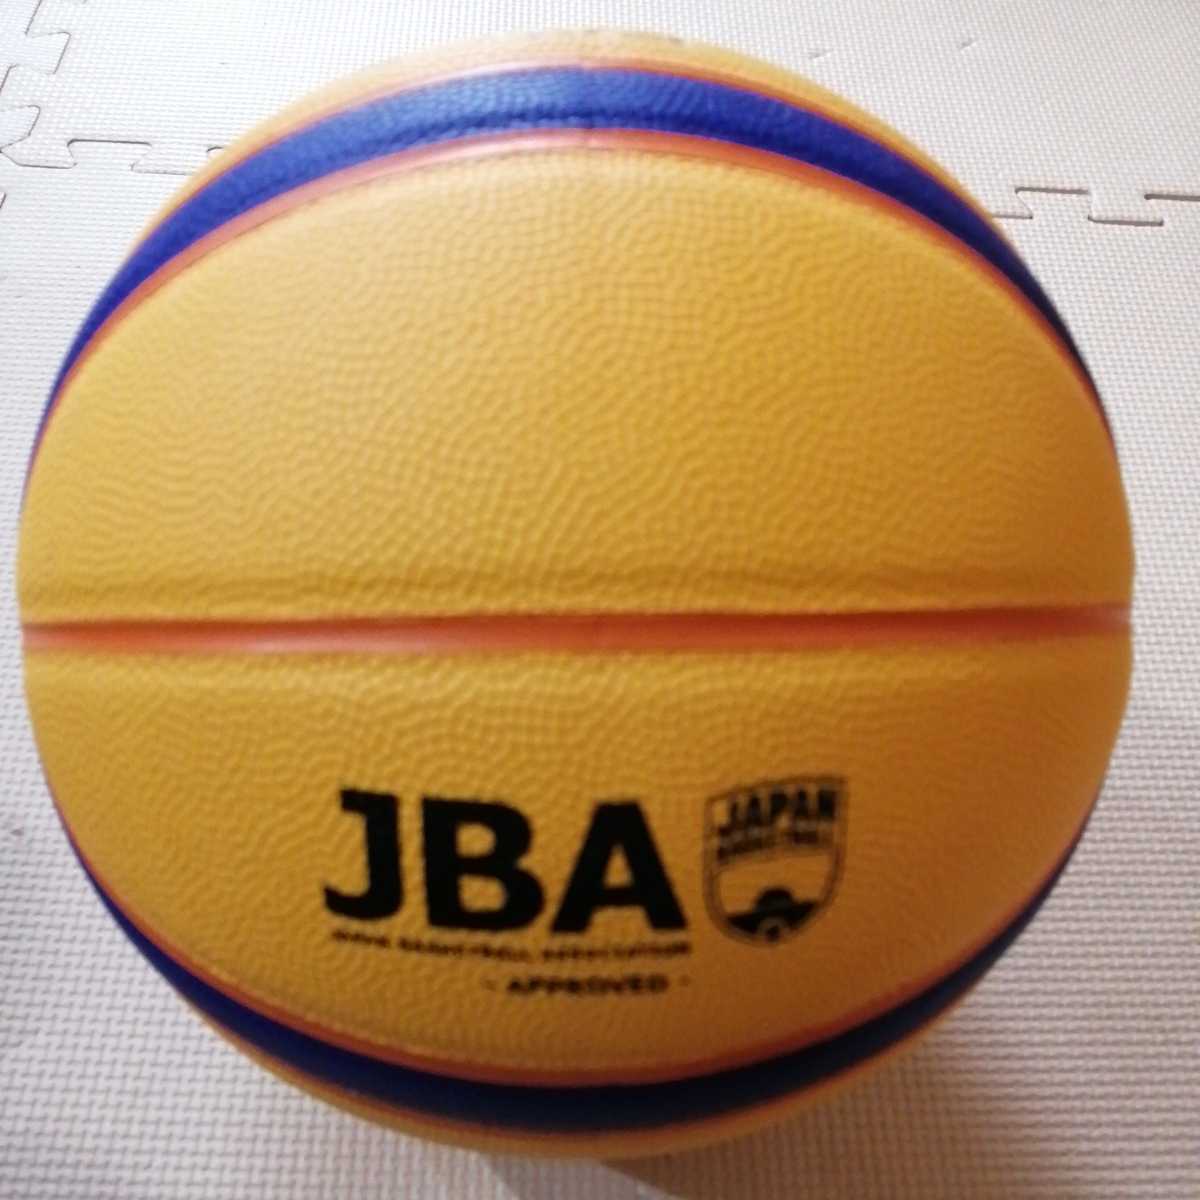 新品未使用 バスケットボール「molten モルテン 3X3 BALL Libertria FIBA B33T5000」サイズ6号 ウエイト7号 人工皮革製 SPALDING MIKASA